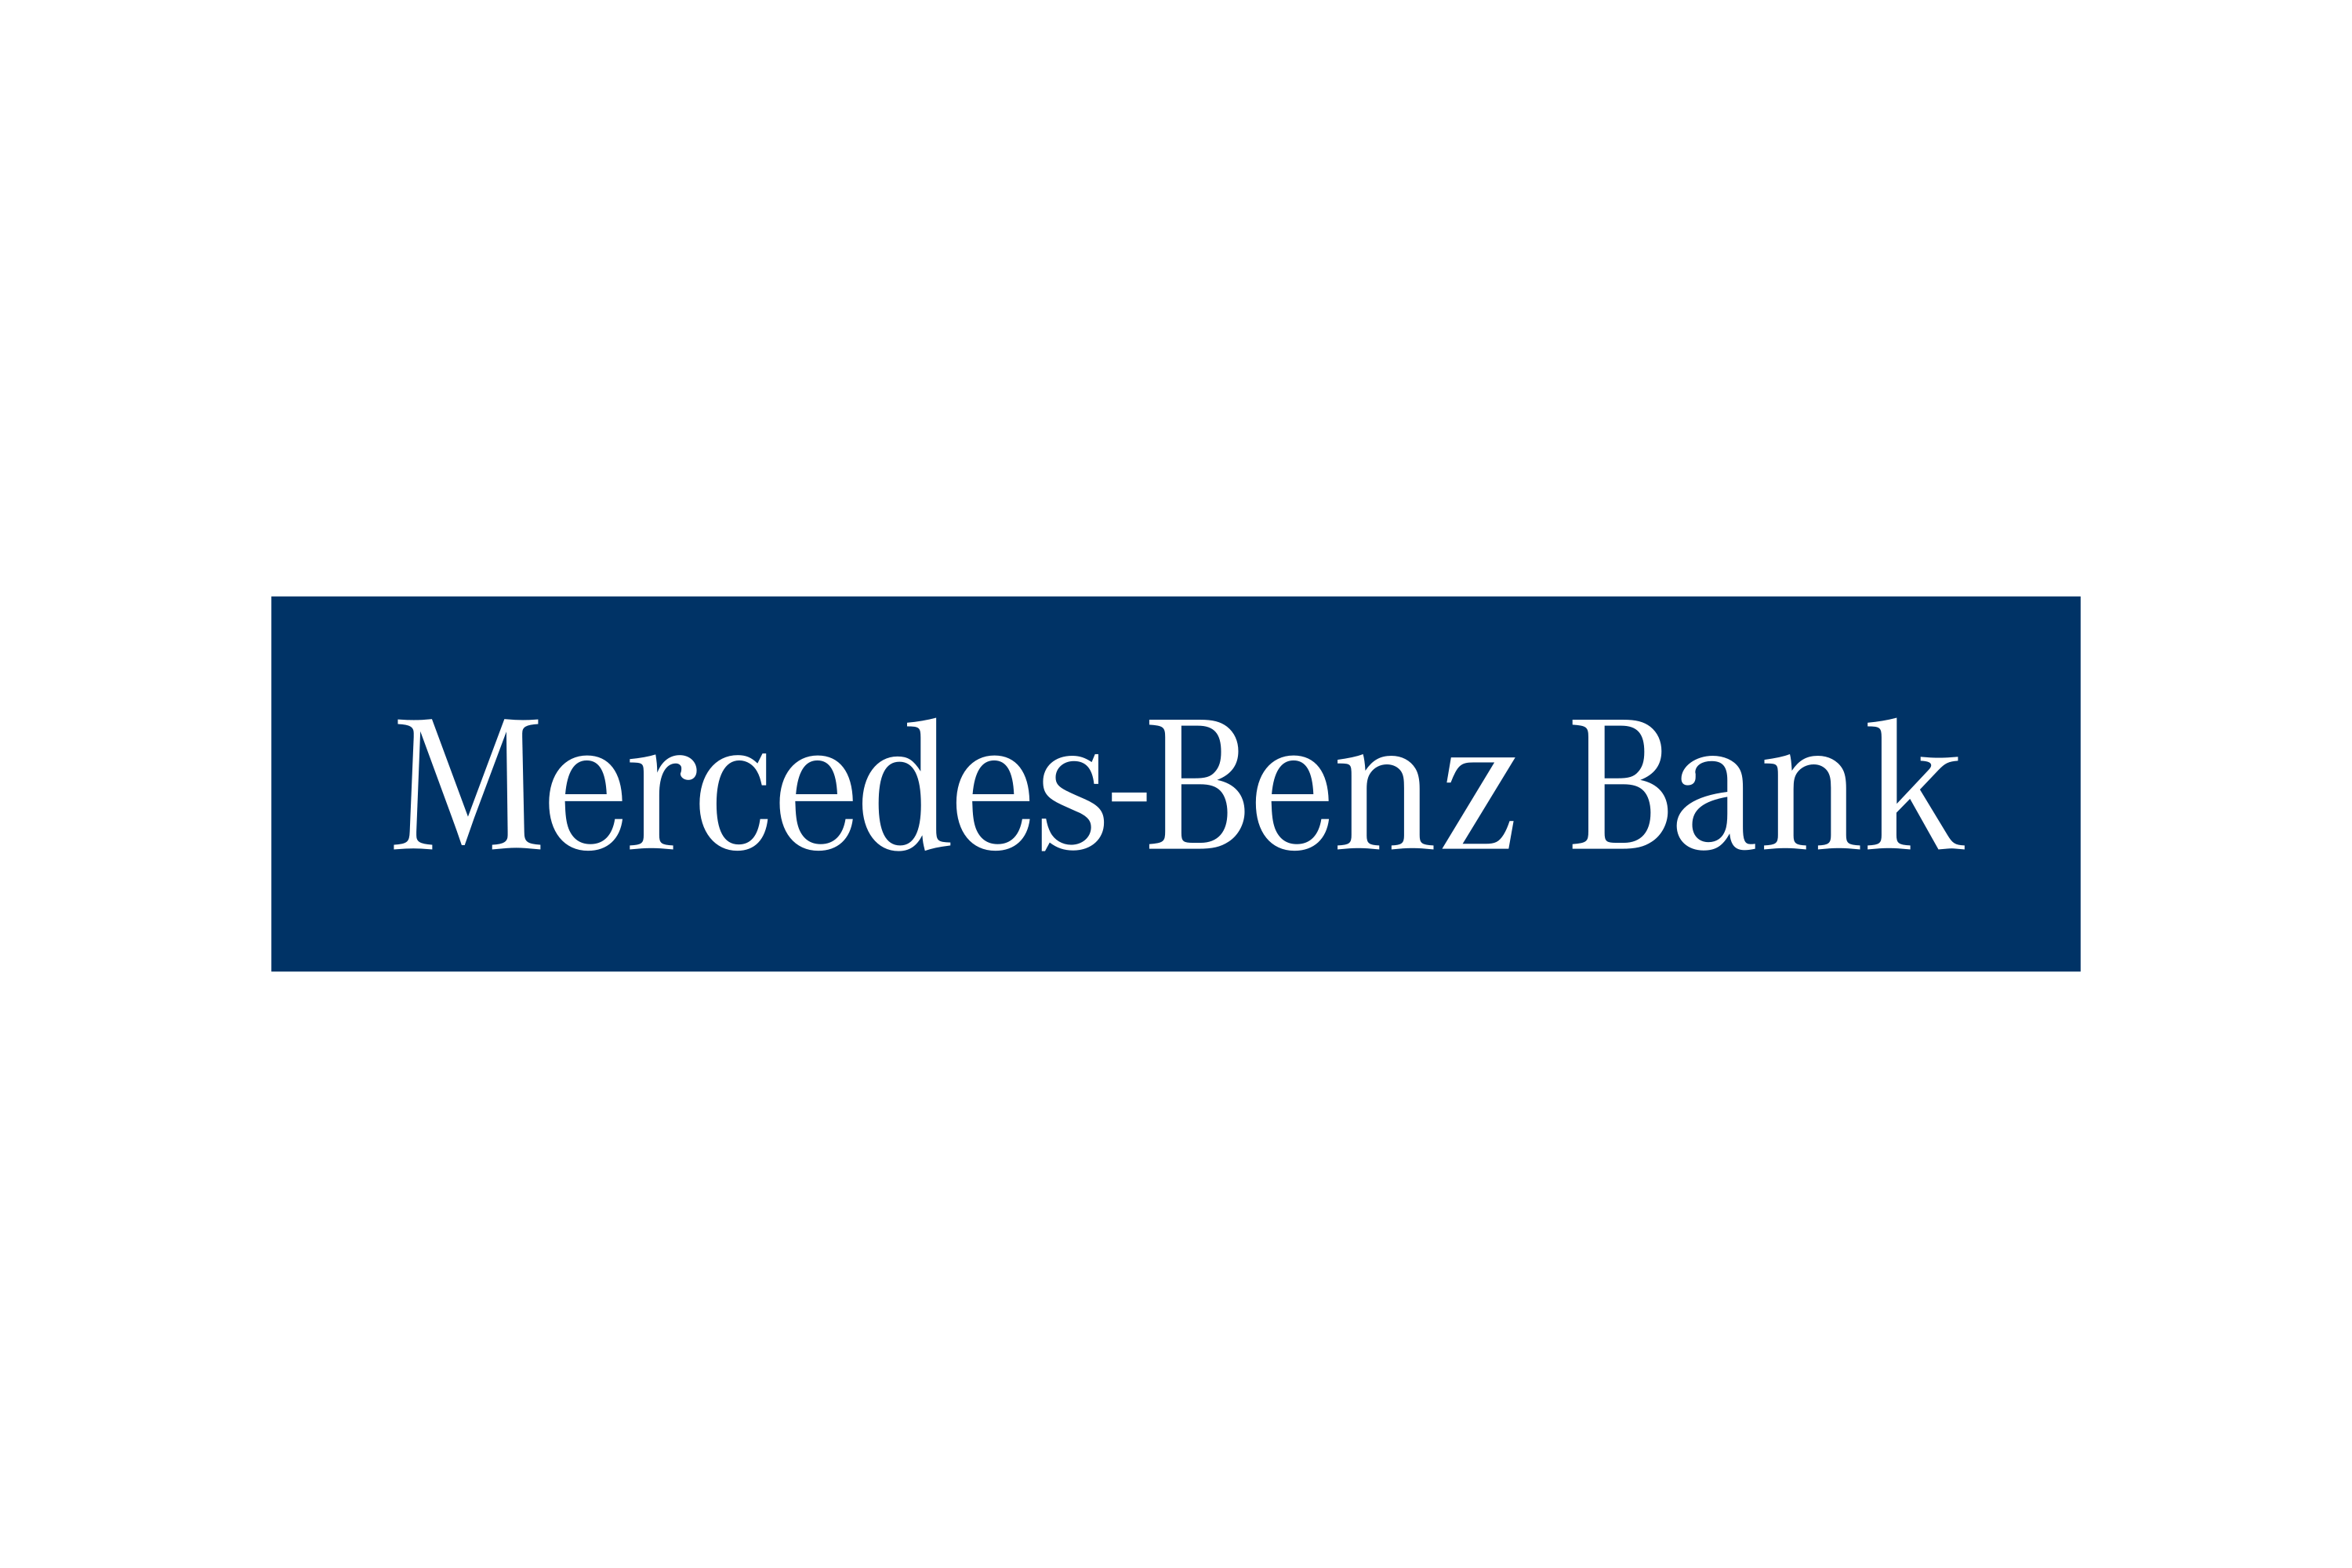 Download Mercedes Benz Bank Ag Logo In Svg Vector Or Png File